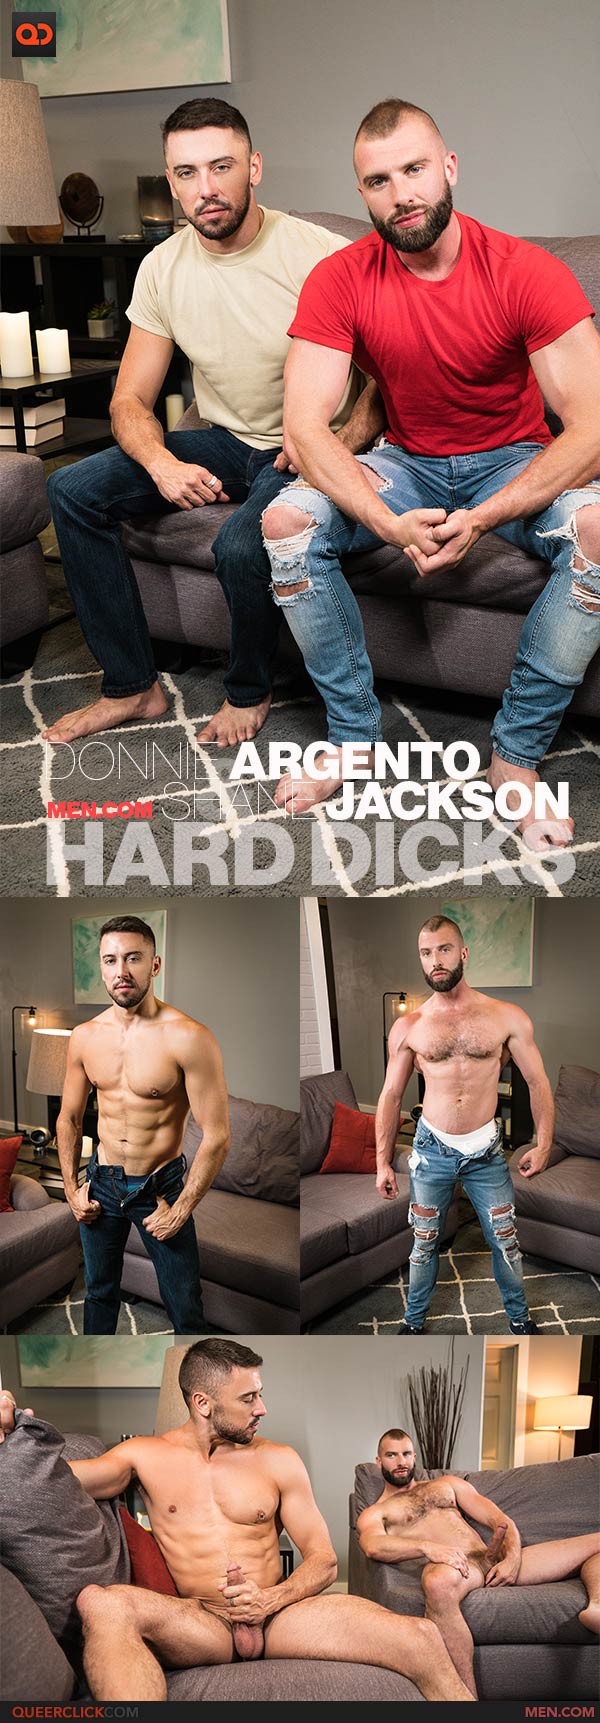 Men.com: Donnie Argento and Shane Jackson - Hard Dicks